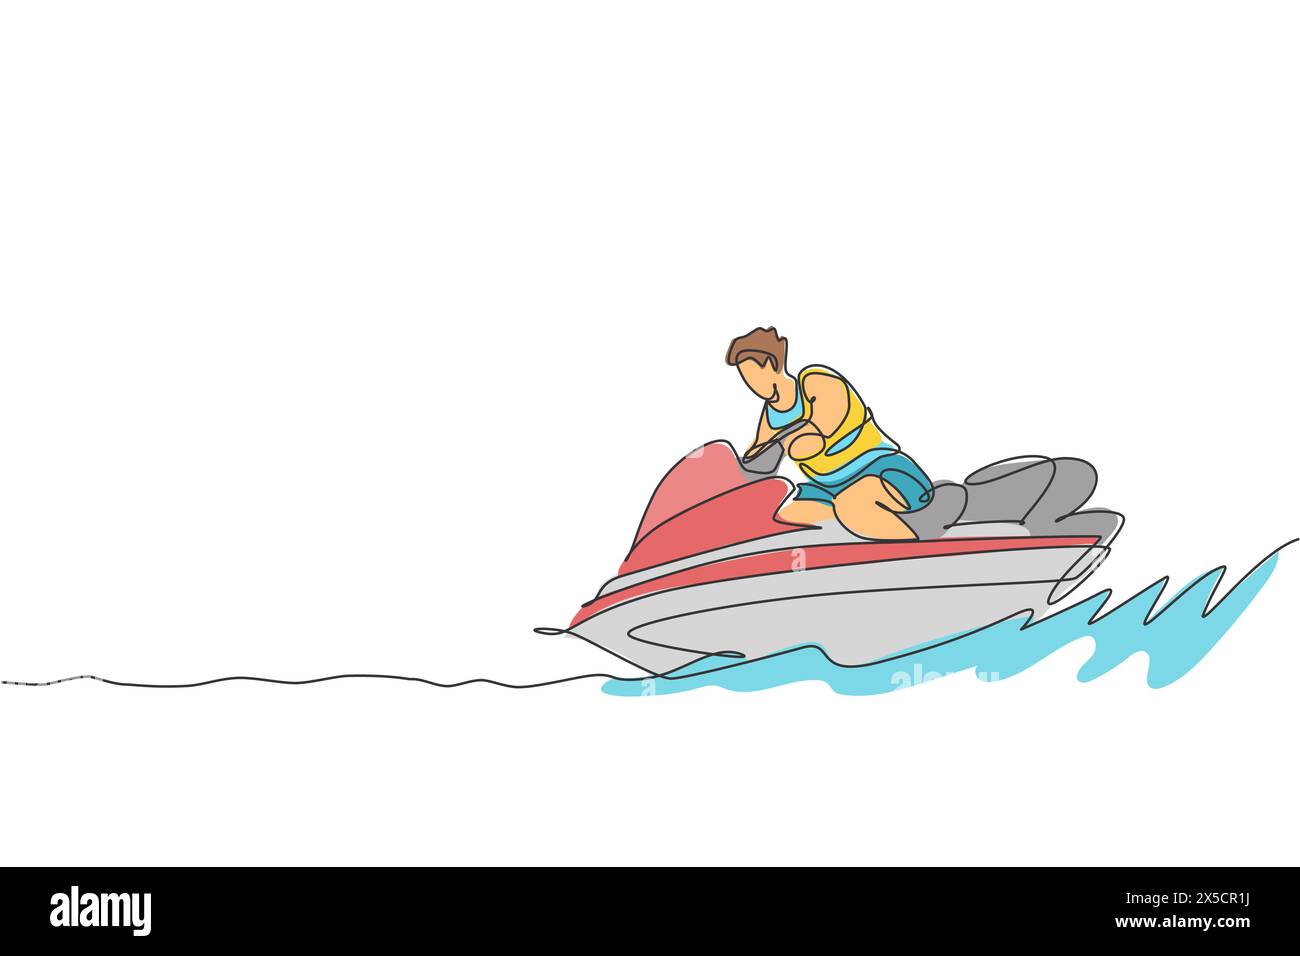 Une seule ligne dessinant jeune homme sportif jouer jet ski dans l'illustration vectorielle graphique de la plage de la mer. Mode de vie sain et concept de sport extrême. Su Illustration de Vecteur